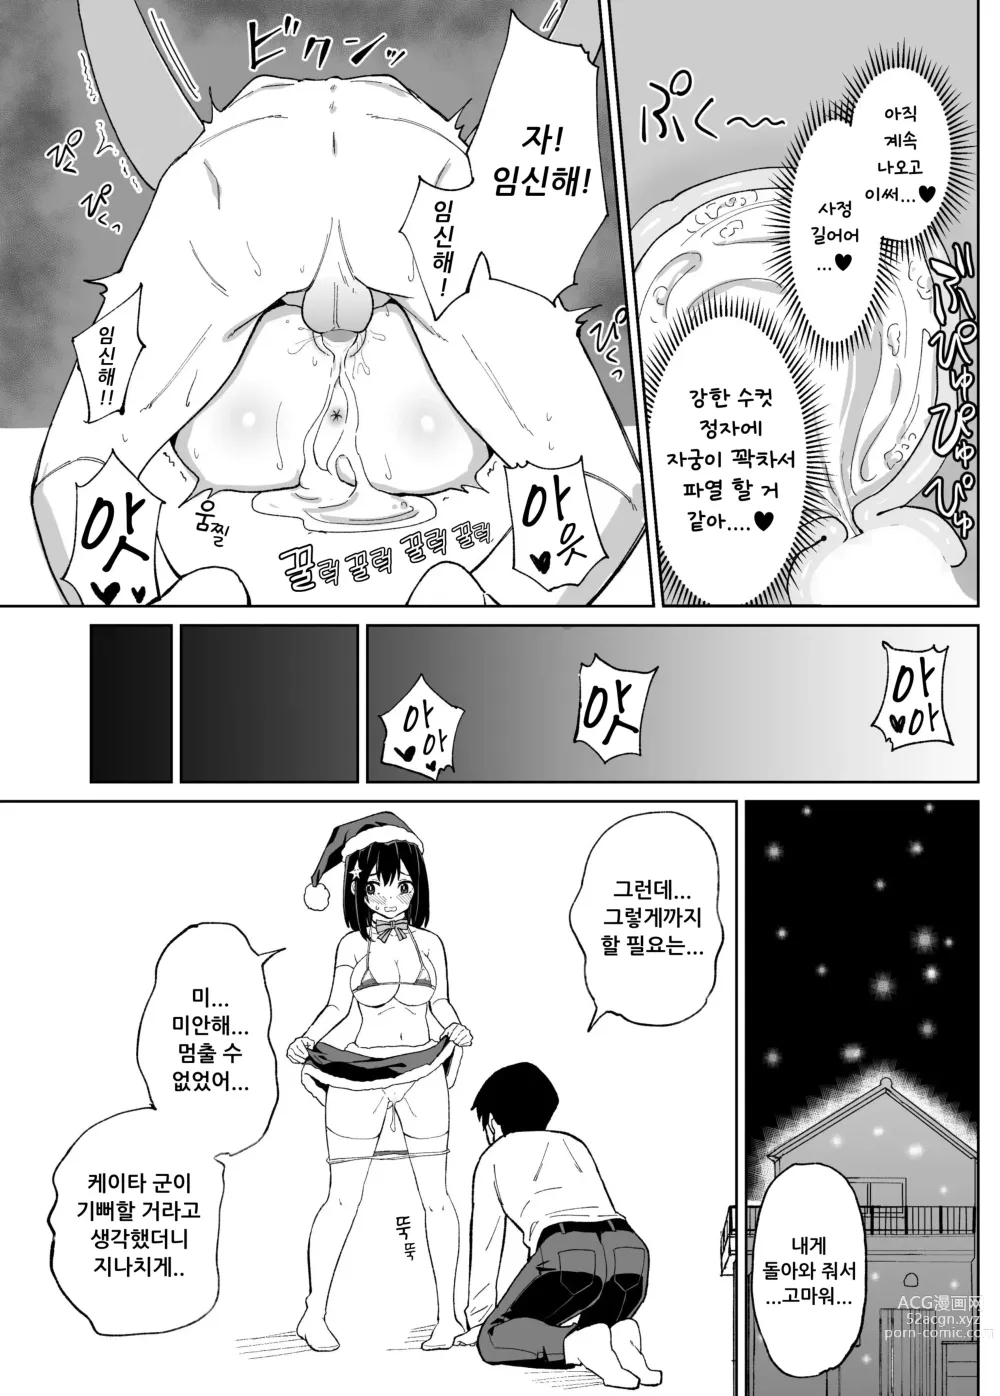 Page 35 of doujinshi 소꿉친구인 그녀에게 받은 X'mas 선물은 네토라레 였습니다